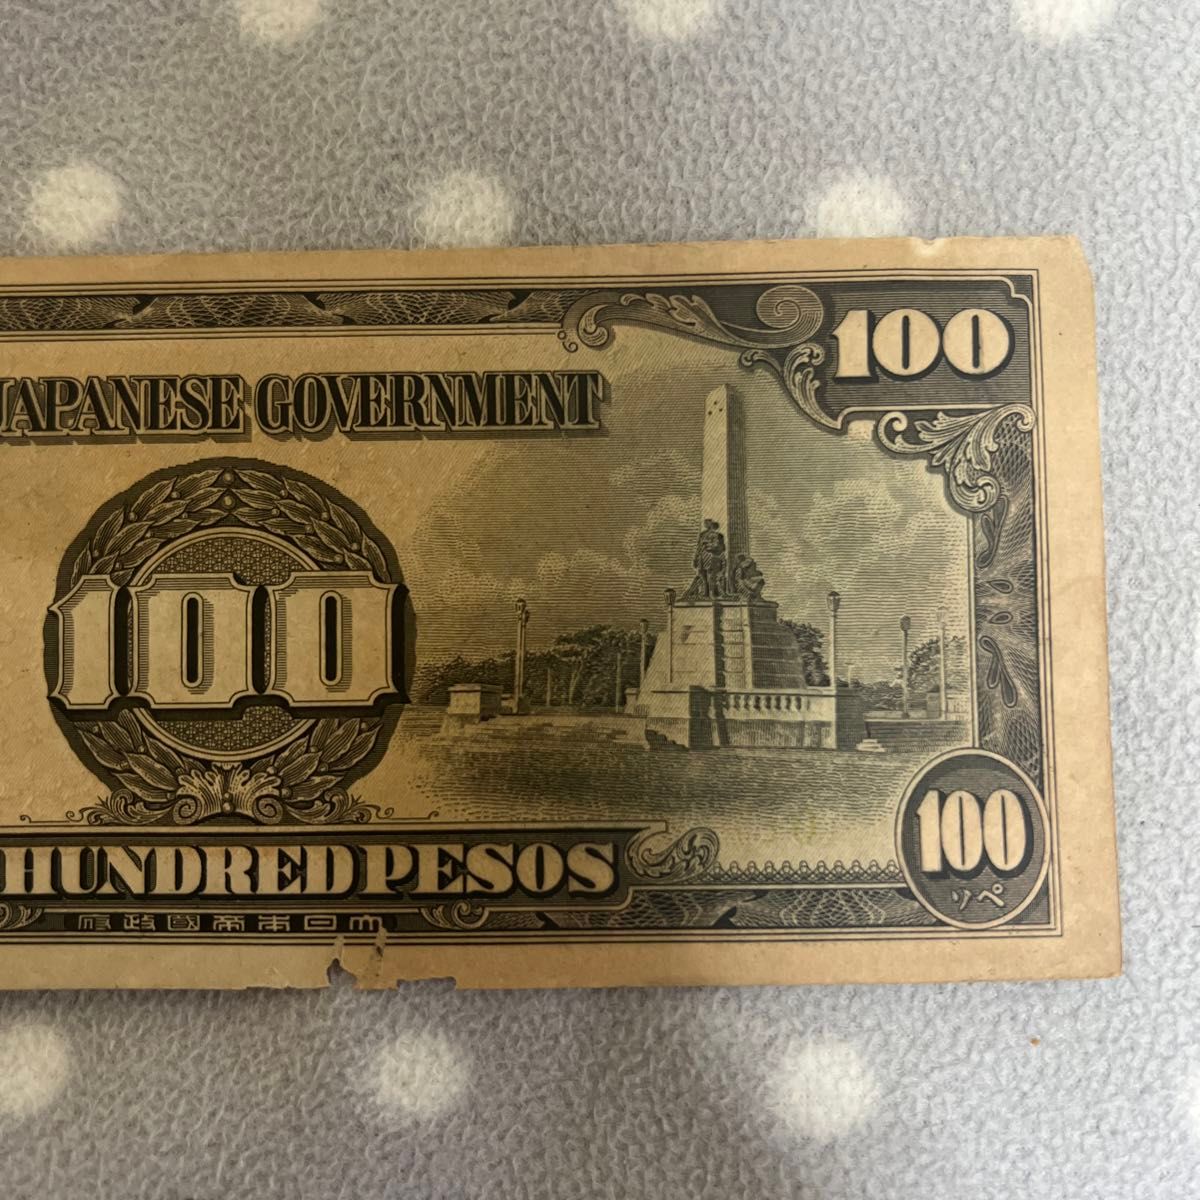 The Japanese government　100ペソ　フィリピン フィリピン方面 旧紙幣 紙幣 軍票 大東亜戦争 